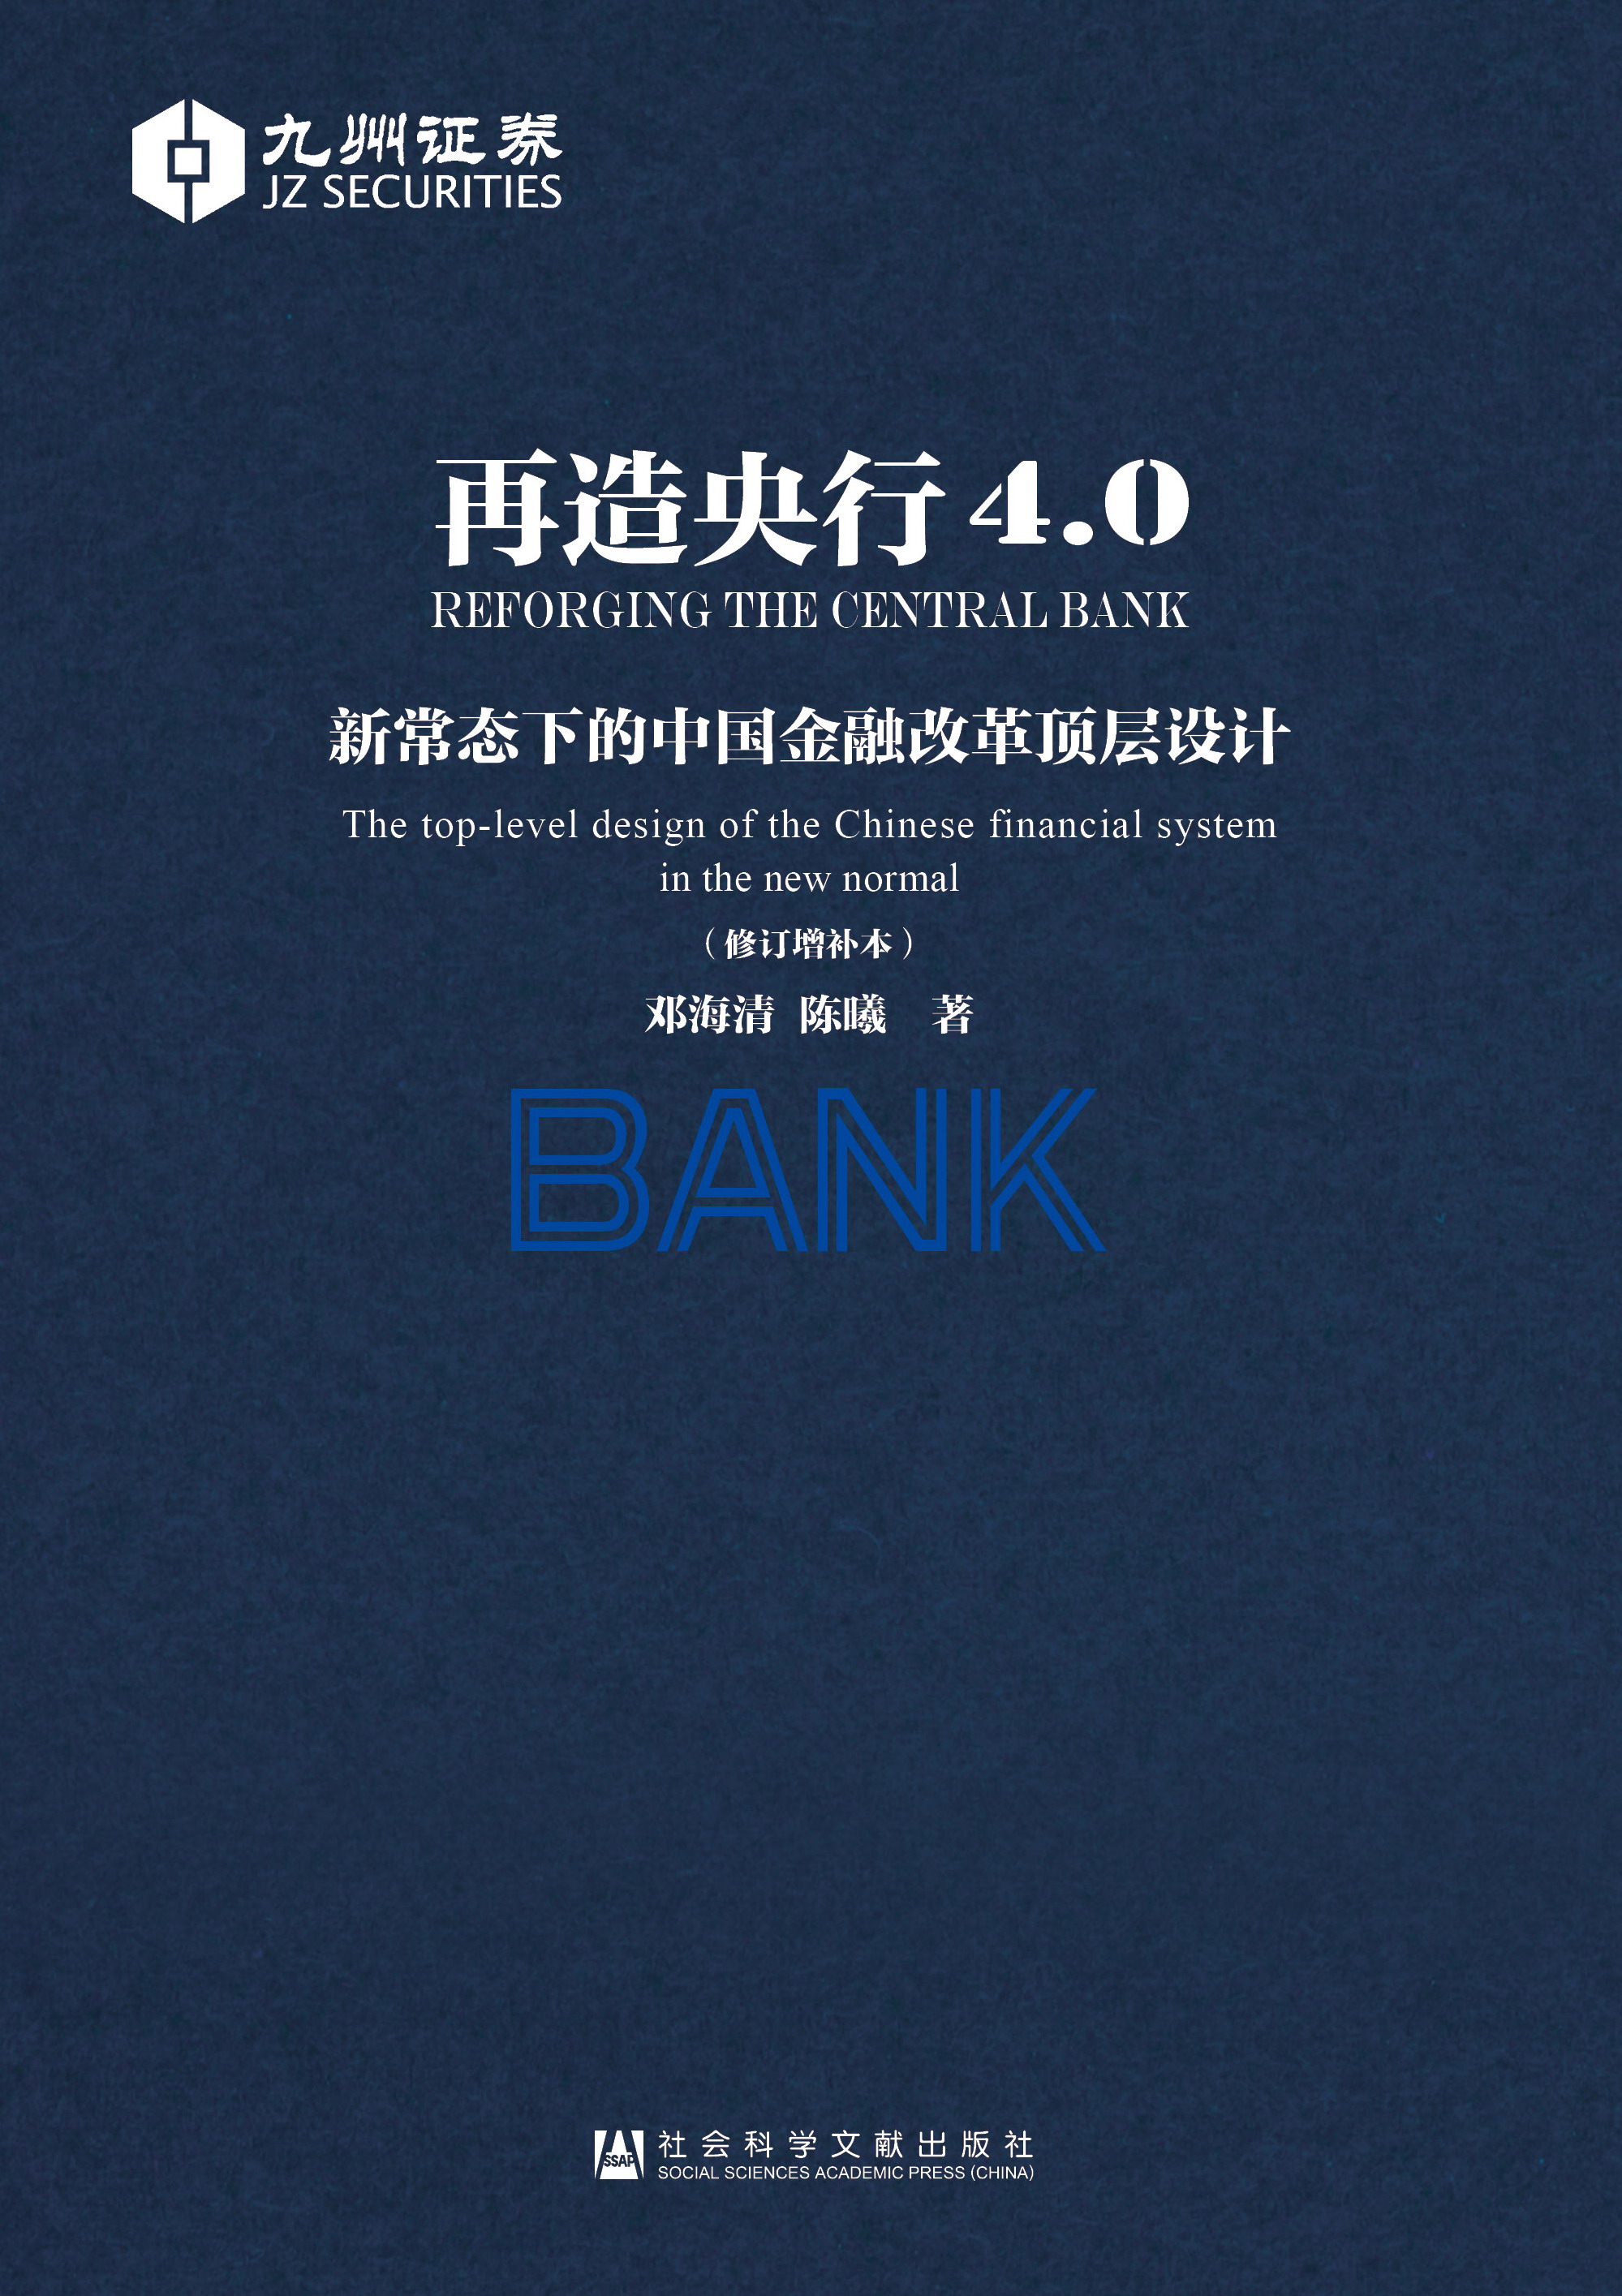 再造央行4.0————新常态下的中国金融改革顶层设计(修订增补本)